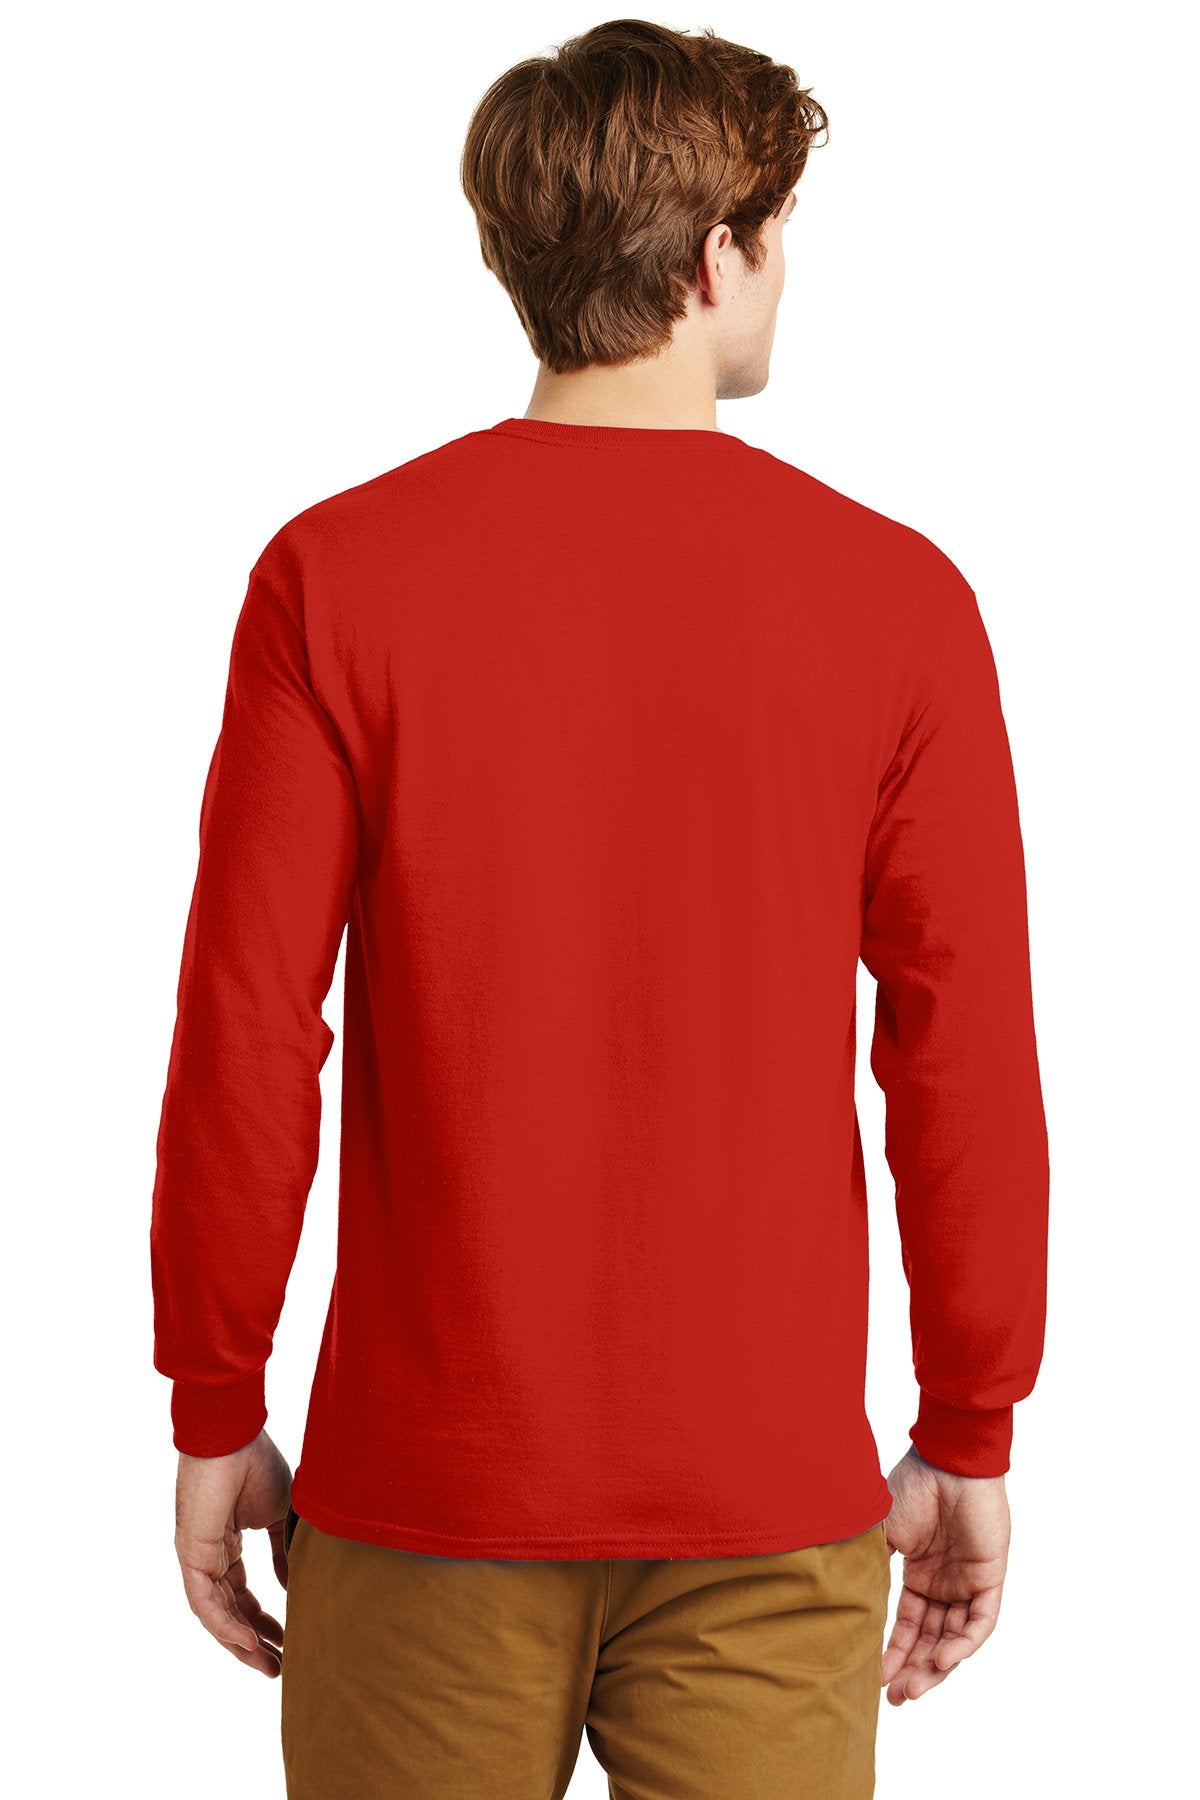 gildan ultra cotton long sleeve t shirt g2400 red